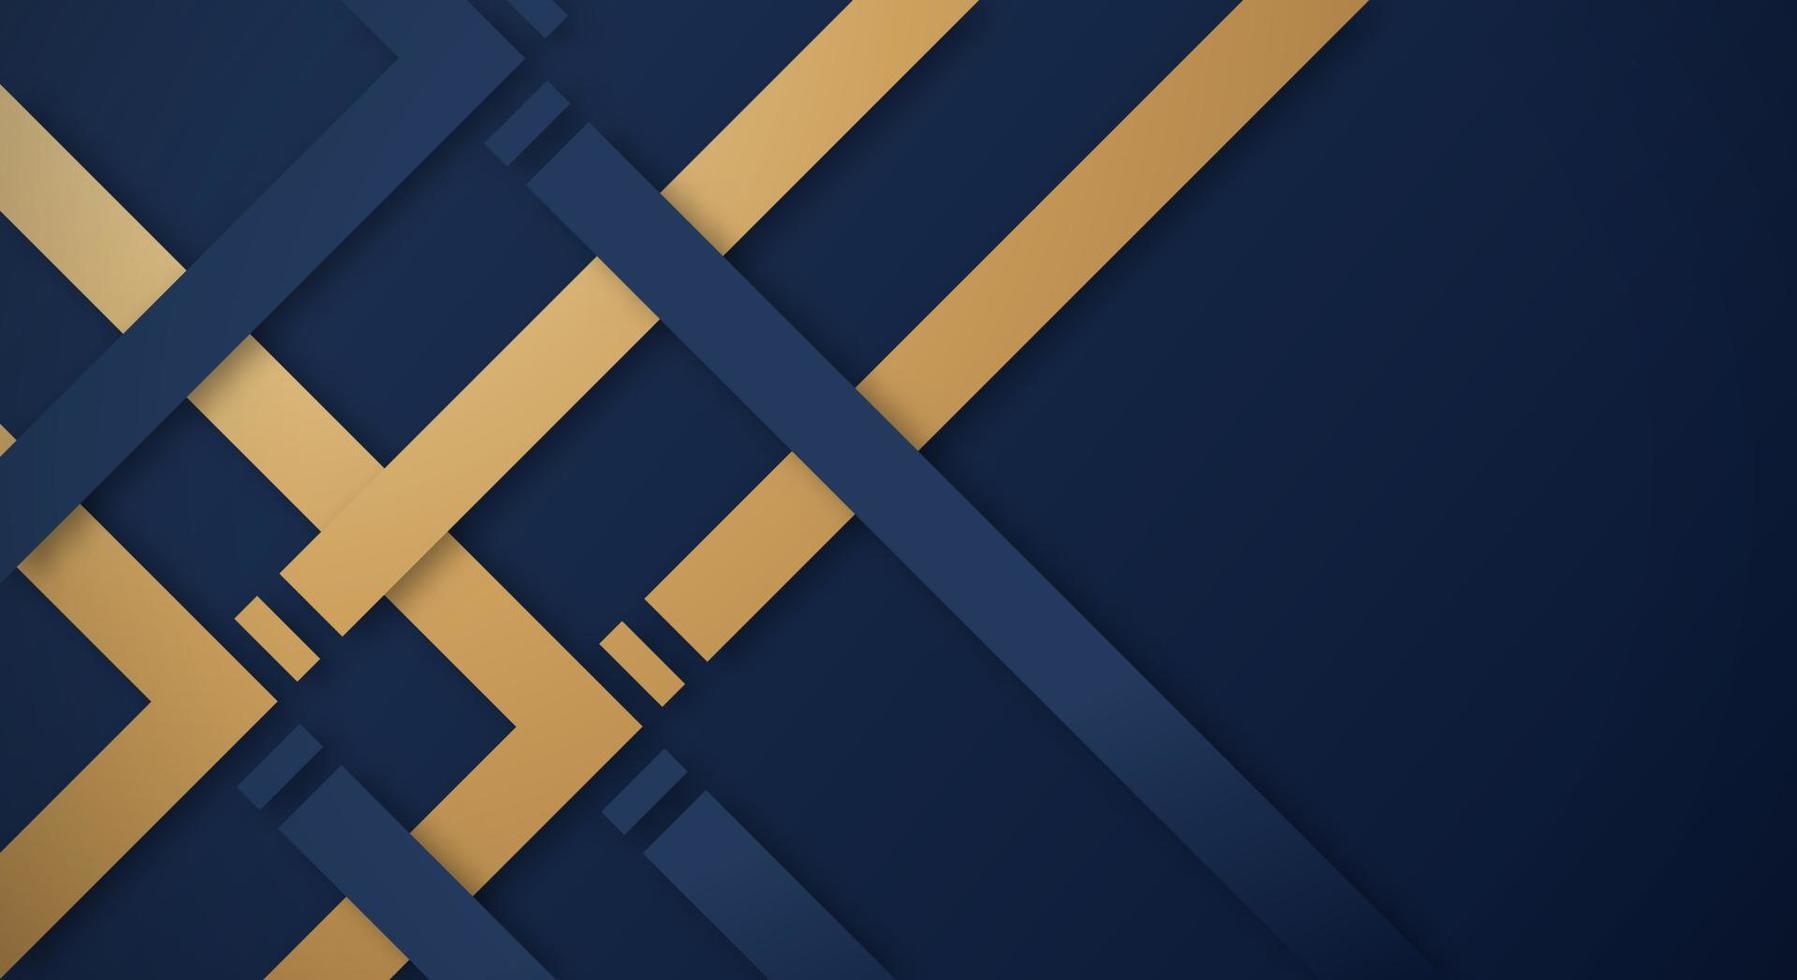 abstract donker blauw 3d achtergrond met goud en blauw lijnen papier besnoeiing stijl getextureerd. bruikbaar voor decoratief web lay-out, poster, banier, zakelijke brochure en congres sjabloon ontwerp vector